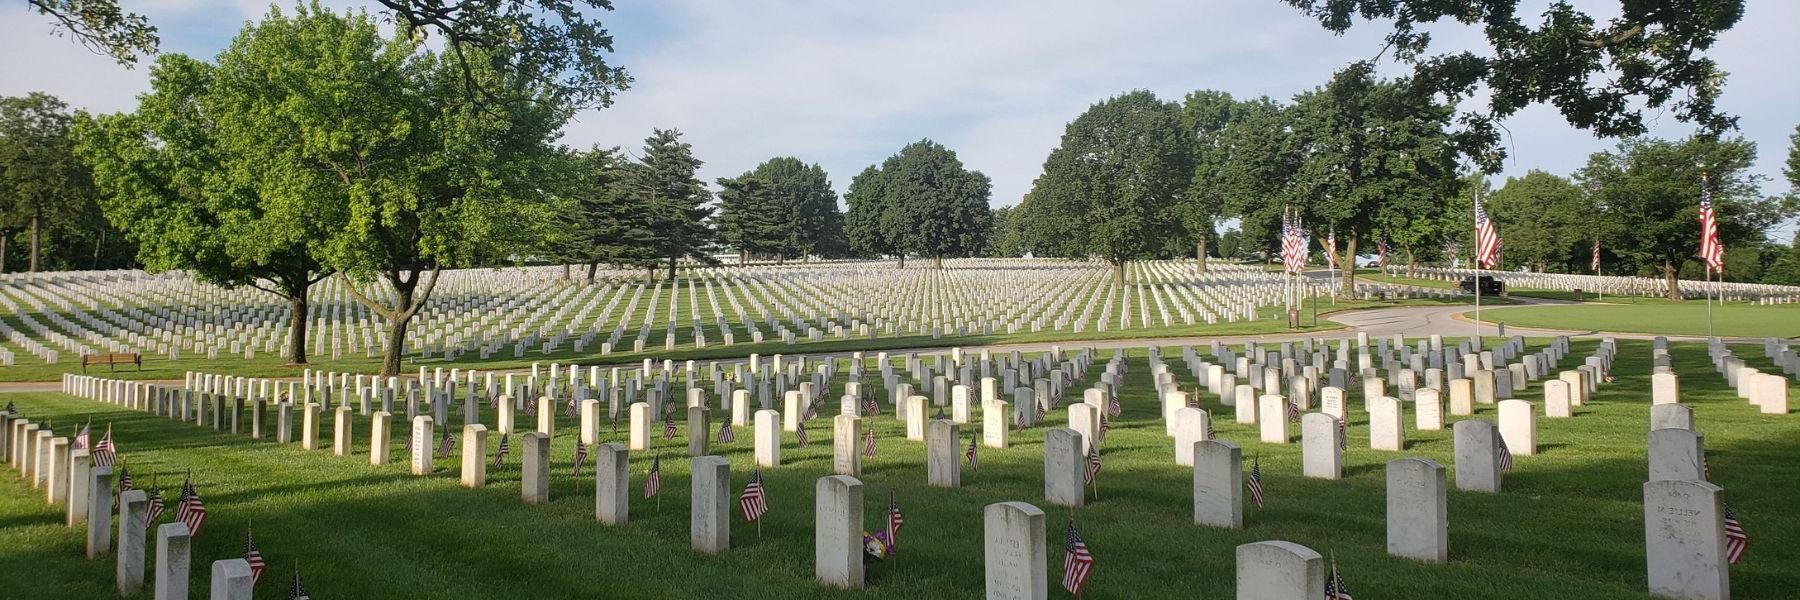 杰斐逊兵营国家公墓保存着2022世界杯投注斯在《美国梦》中扮演的迷人角色.S. 军事历史.